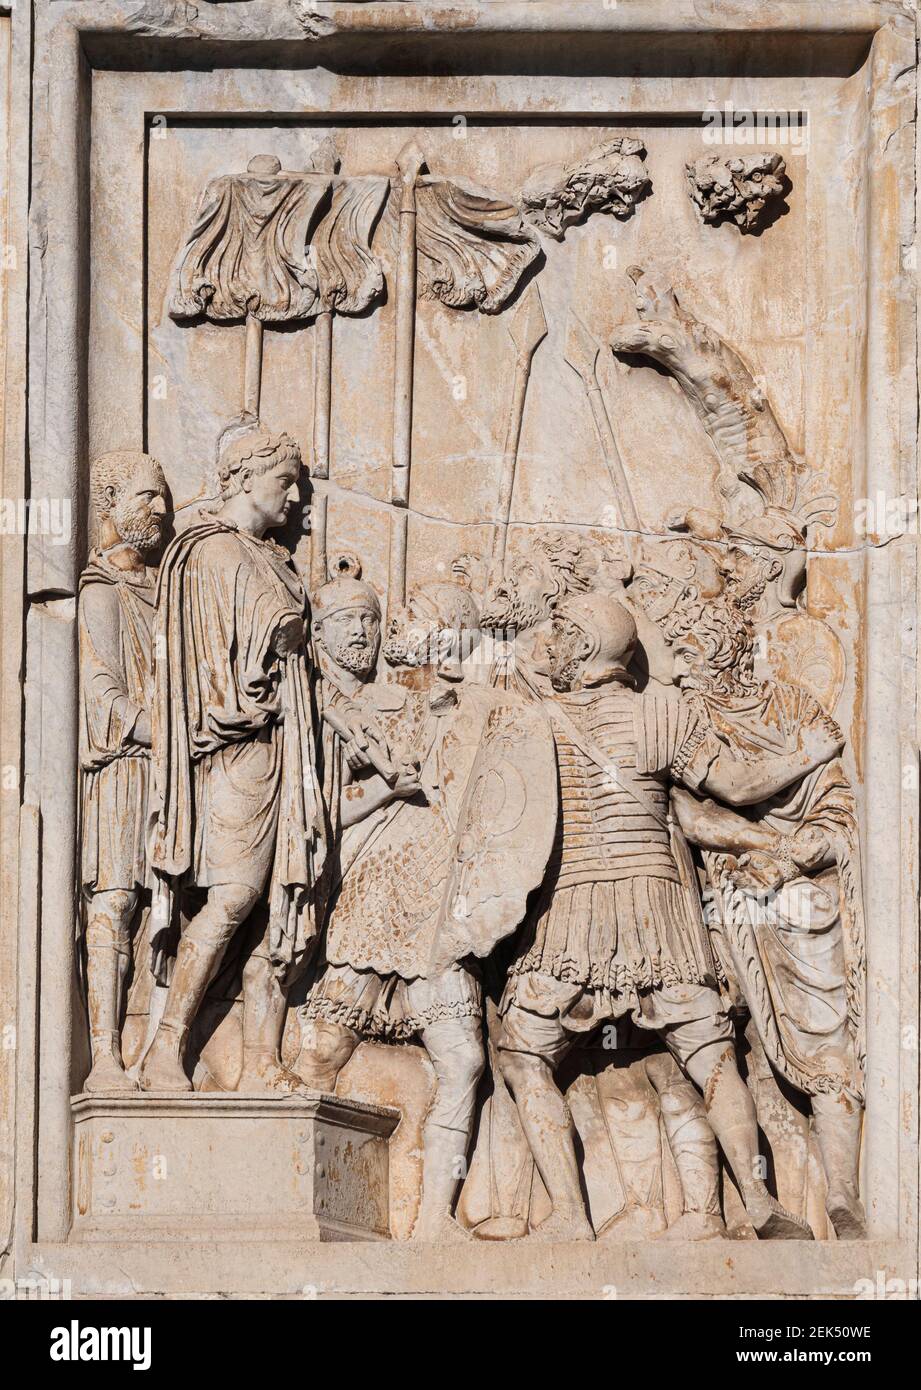 Roma. Italia. Arco de Constantino (Arco di Costantino), detalle de relieve escultórico que representa al emperador romano Marcus Aurelius (cabeza reemplazada por la de Foto de stock